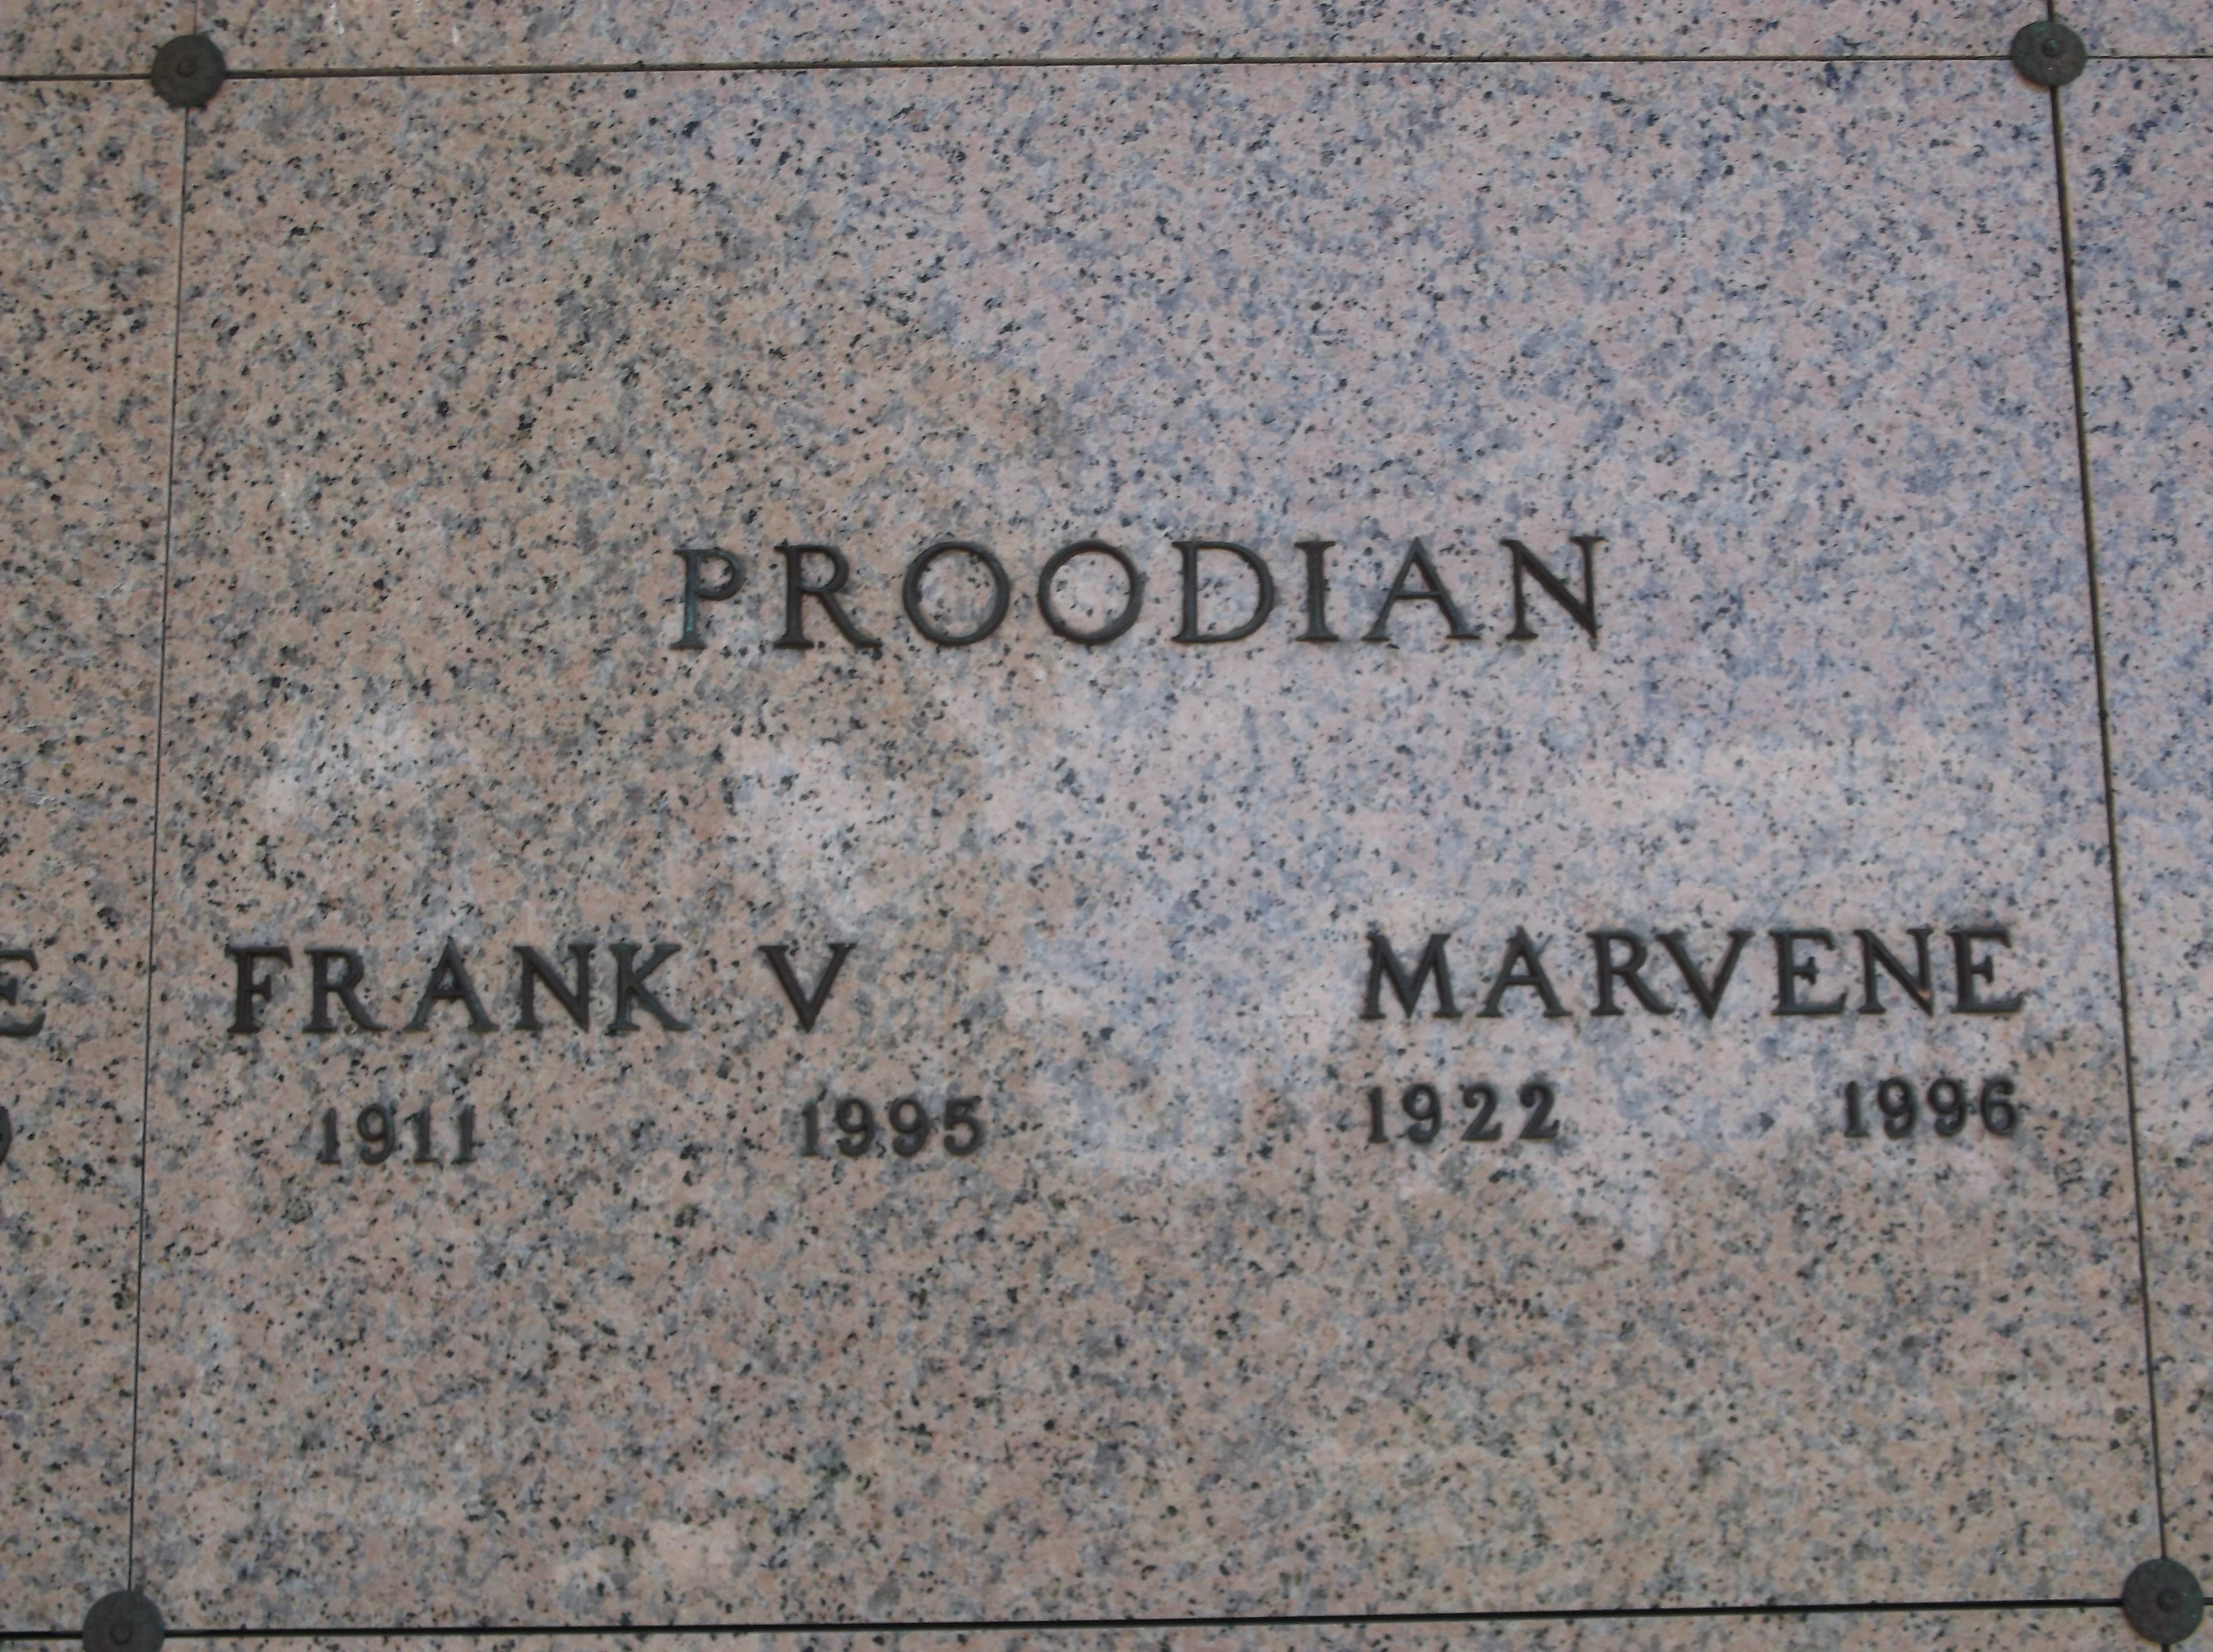 Frank V Proodian